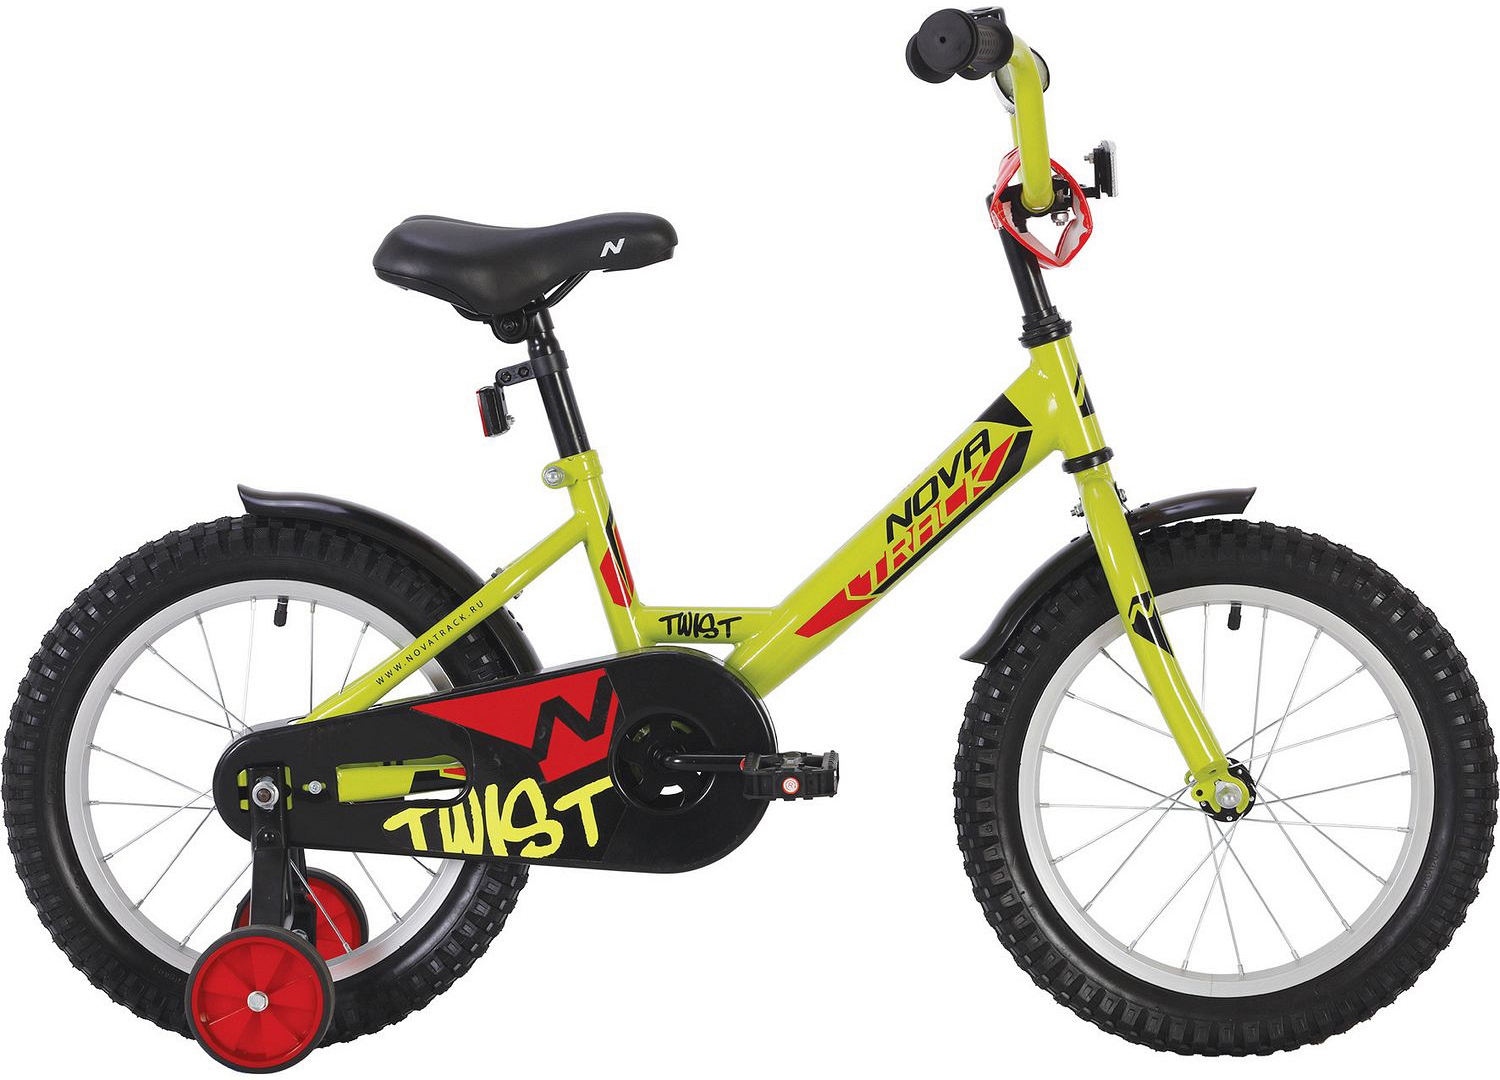  Отзывы о Детском велосипеде Novatrack Twist 20 2020